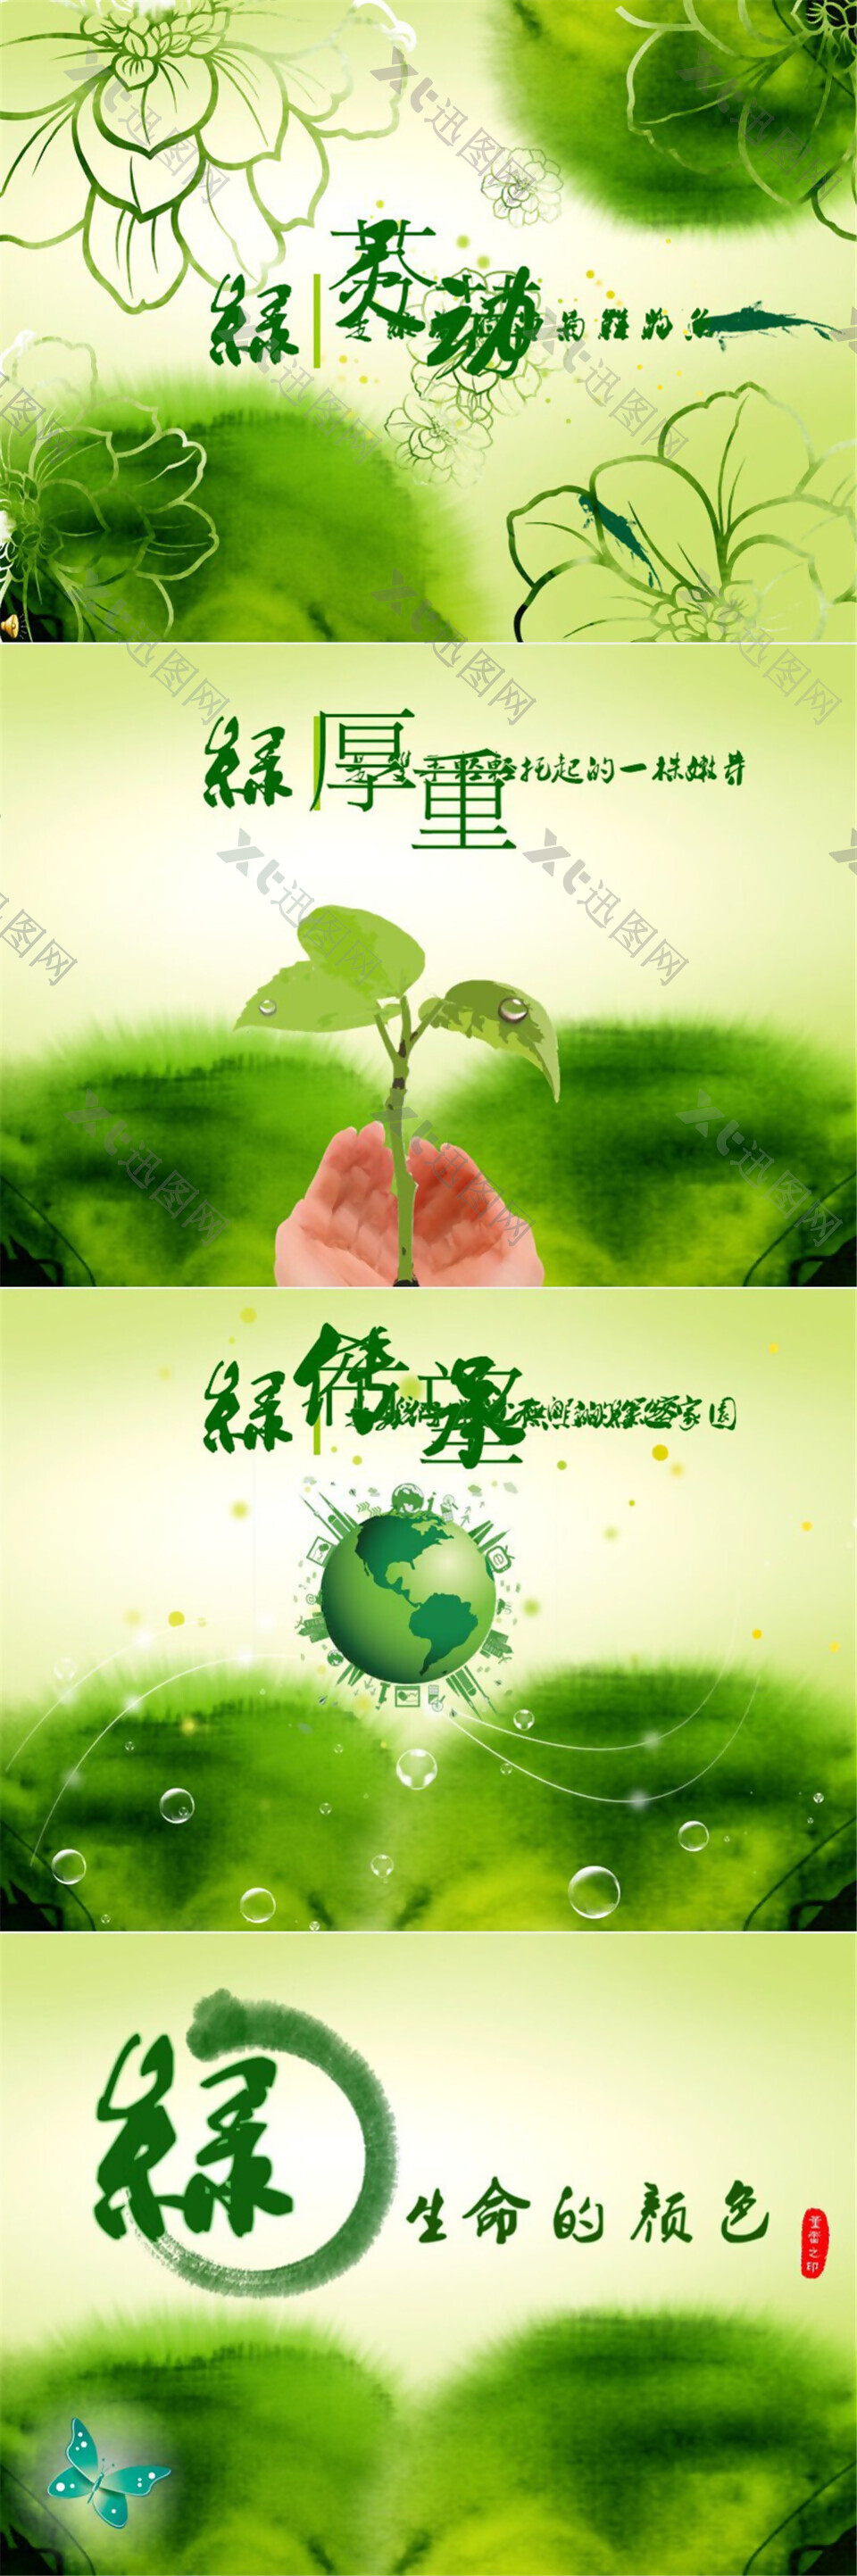 绿——生命的颜色淡雅清爽环保主题动态ppt模板